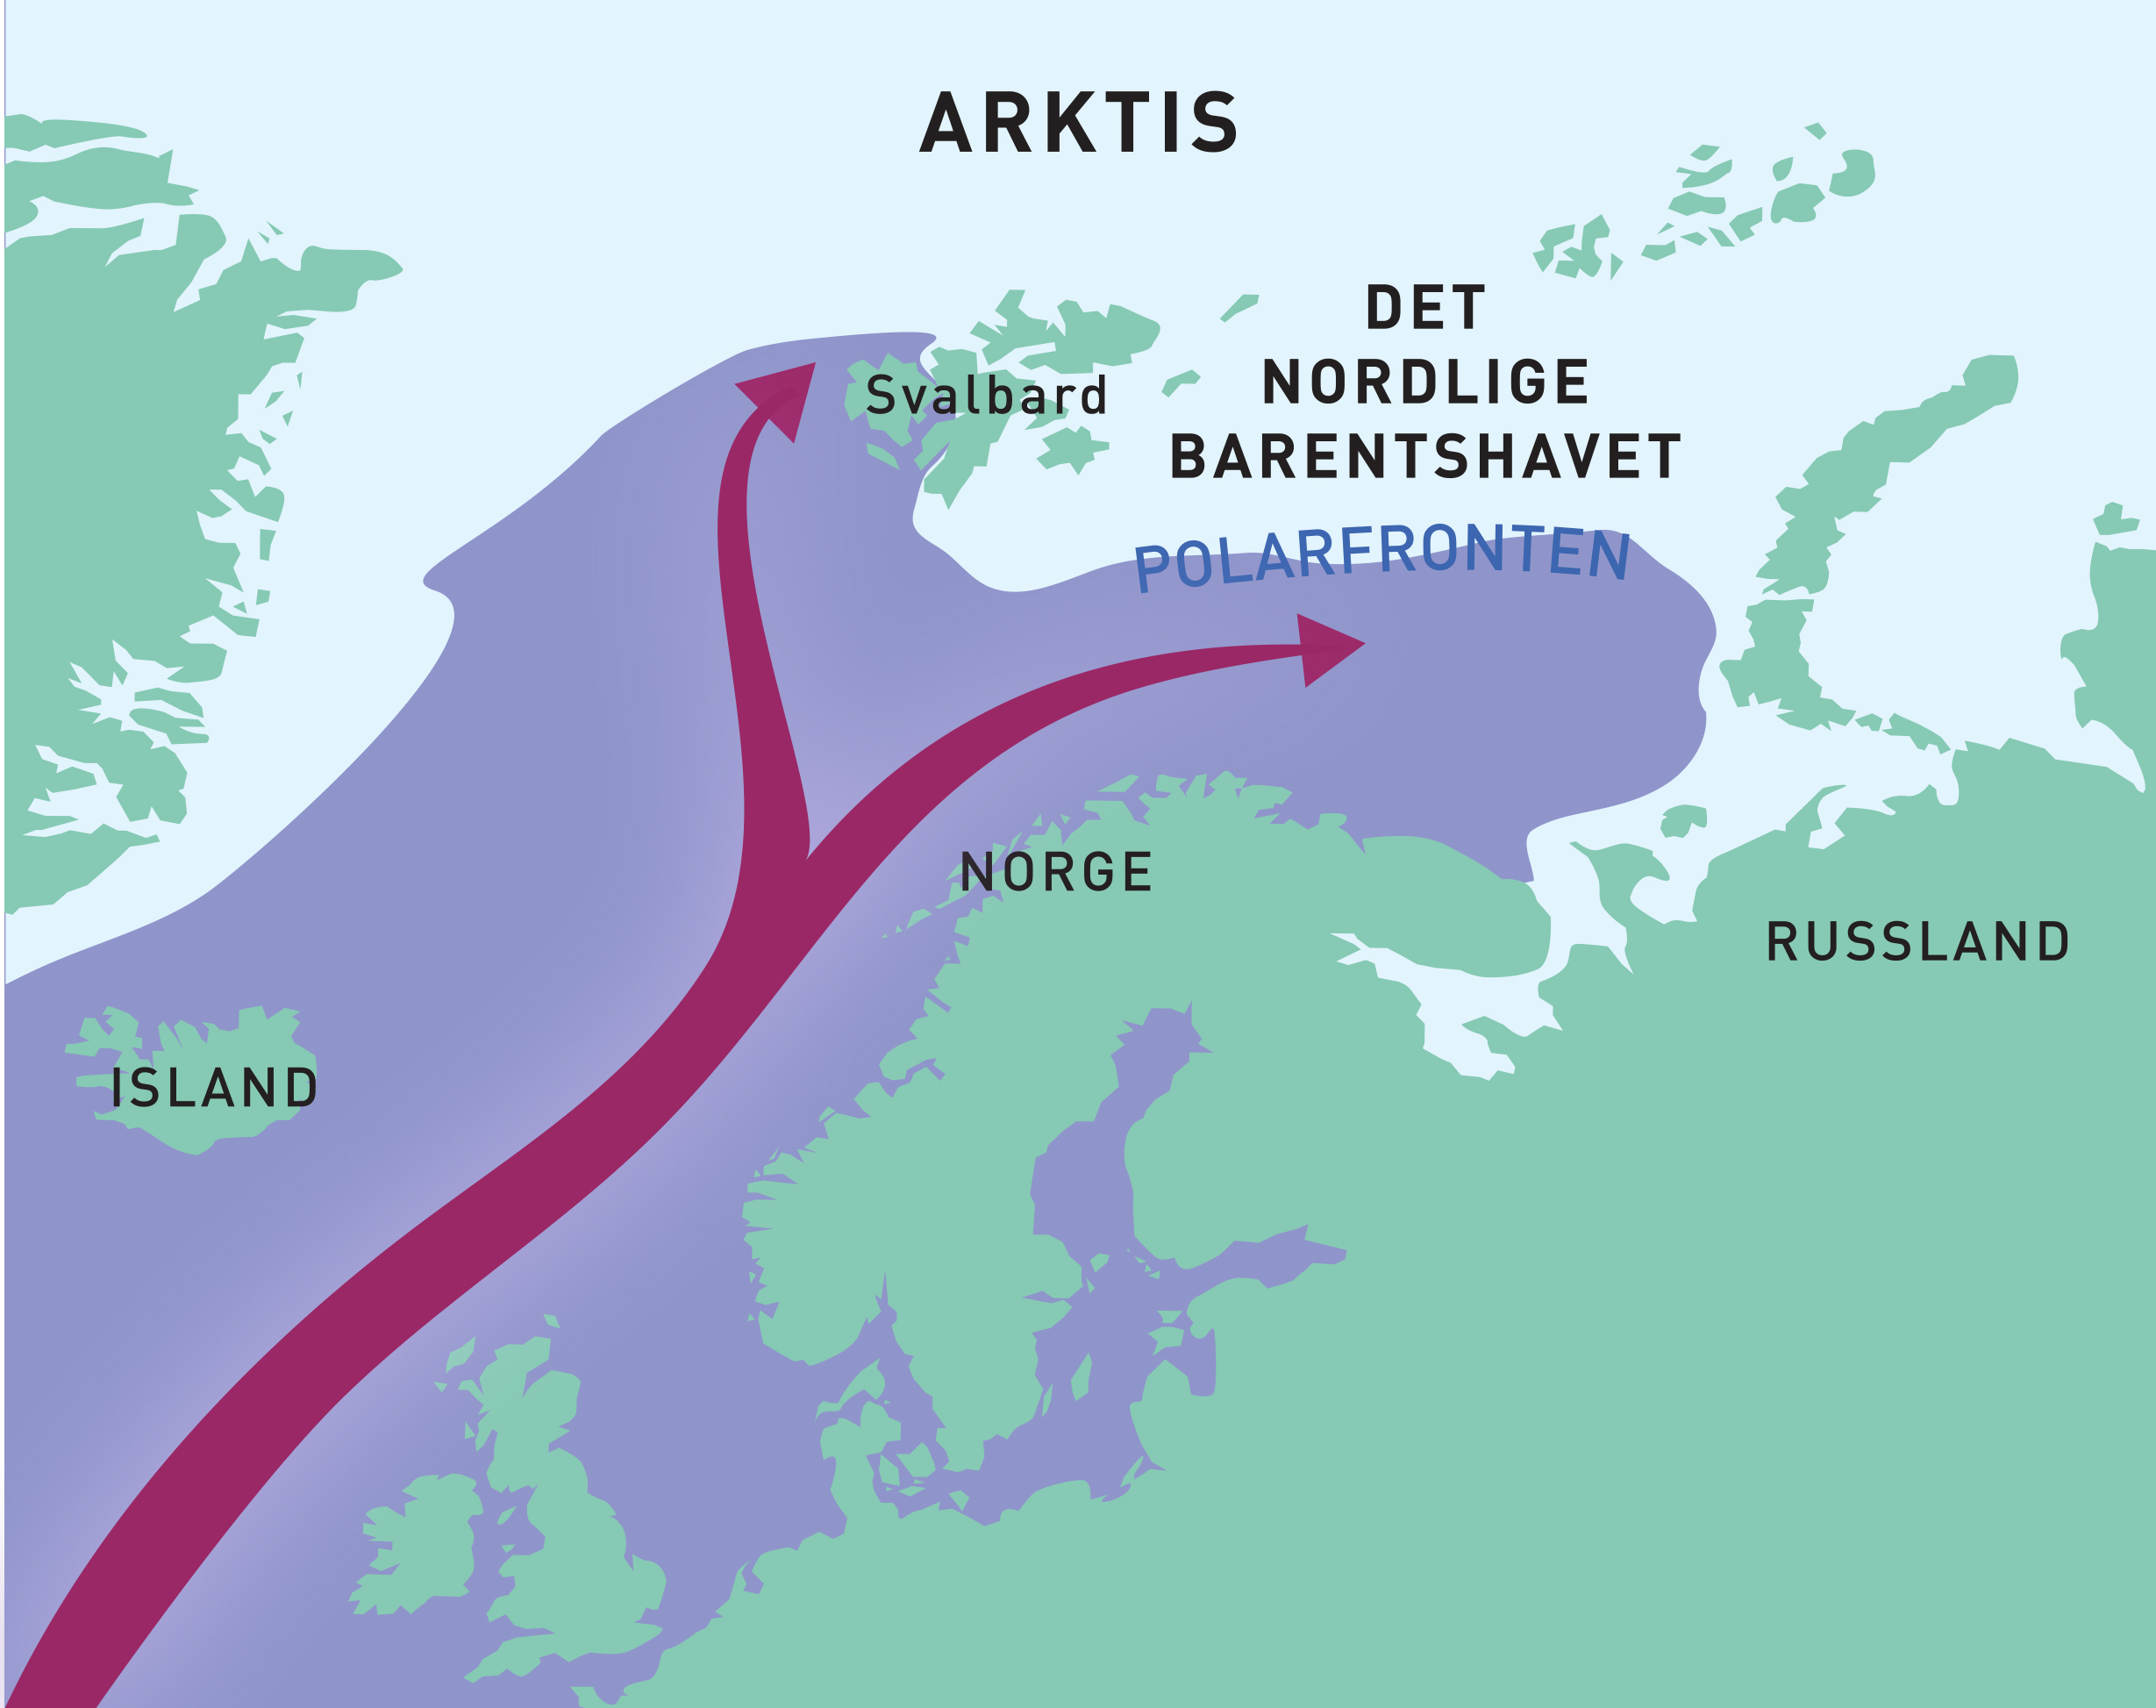 Las cálidas aguas del Atlántico (en color morado) que fluyen hacia el norte a lo largo de la costa noruega continúan el viaje hacia el Ártico en dos ramas principales: a través del mar de Barents y a través del estrecho de Fram, al oeste de Svalbard. En el norte del mar de Barents y en el área al norte de Svalbard, el agua caliente se encuentra con las frías aguas del Ártico.(Mapa: Sigrid Lind / Ola Reibo)